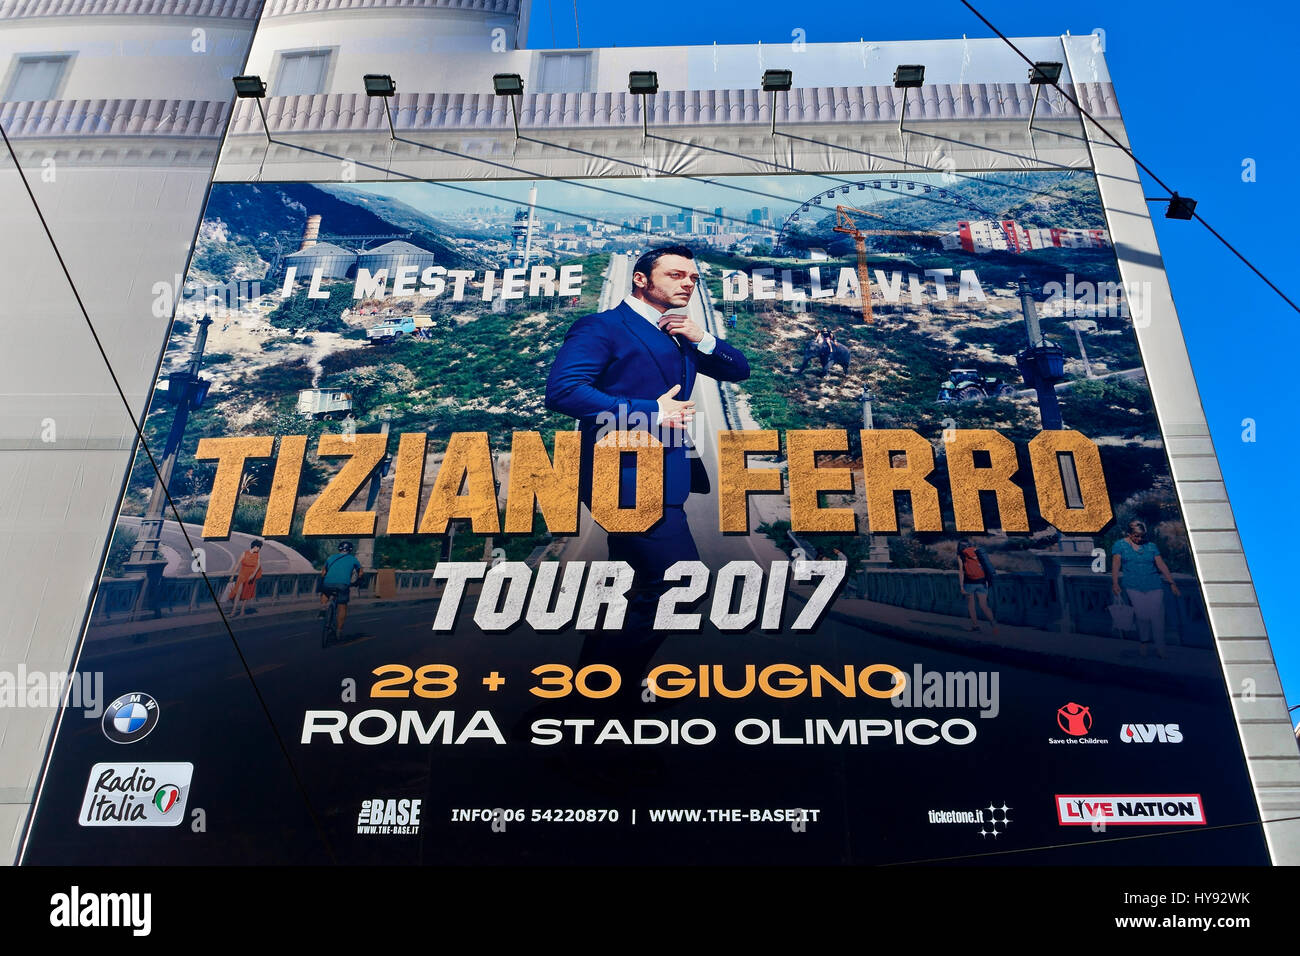 Le chanteur italien Tiziano Ferro. "Il Mestiere della vita" Tour 2017, 28 au 30 juin à Rome Stadium. Concert énorme affiche sur une façade de l'immeuble à Rome, Italie. Banque D'Images